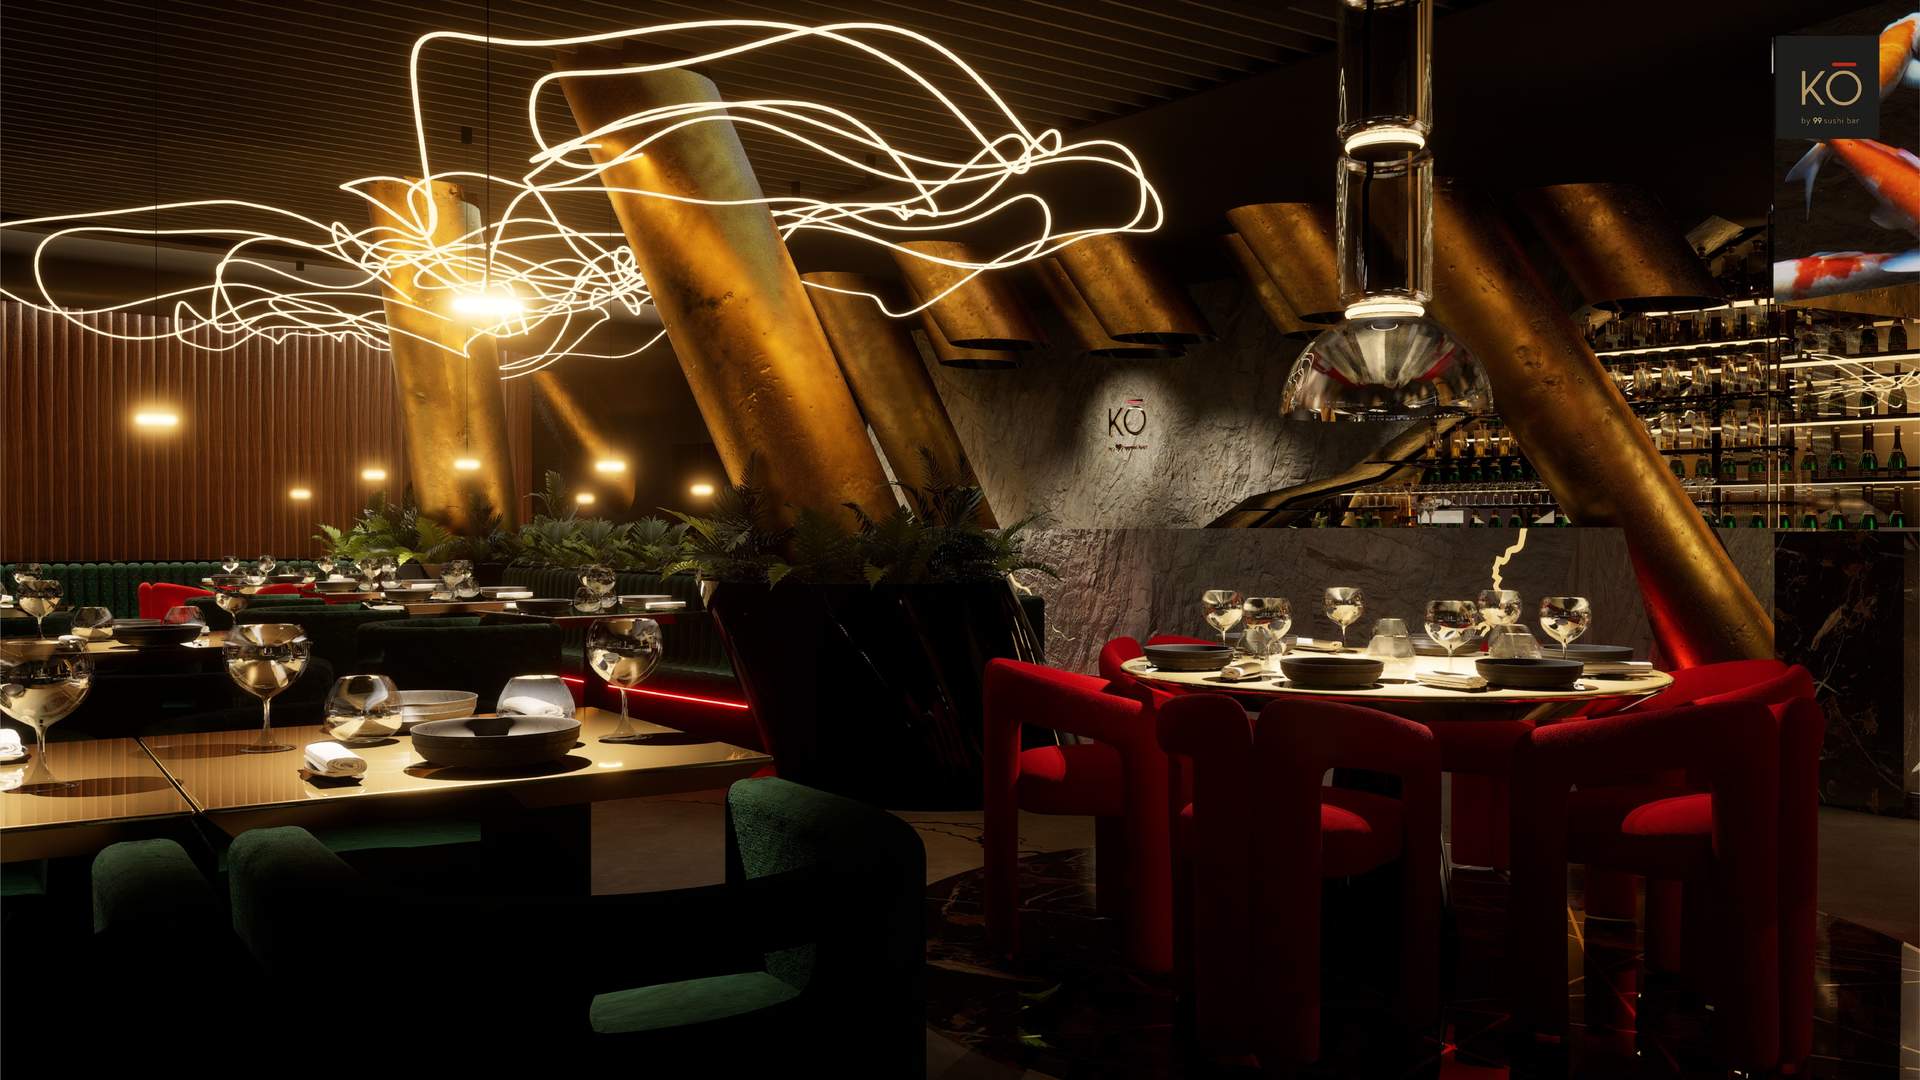 Grupo Bambú impulsa su expansión con un nuevo concepto gastronómico 'KO by 99 Sushi Bar' en Madrid y Abu Dhabi